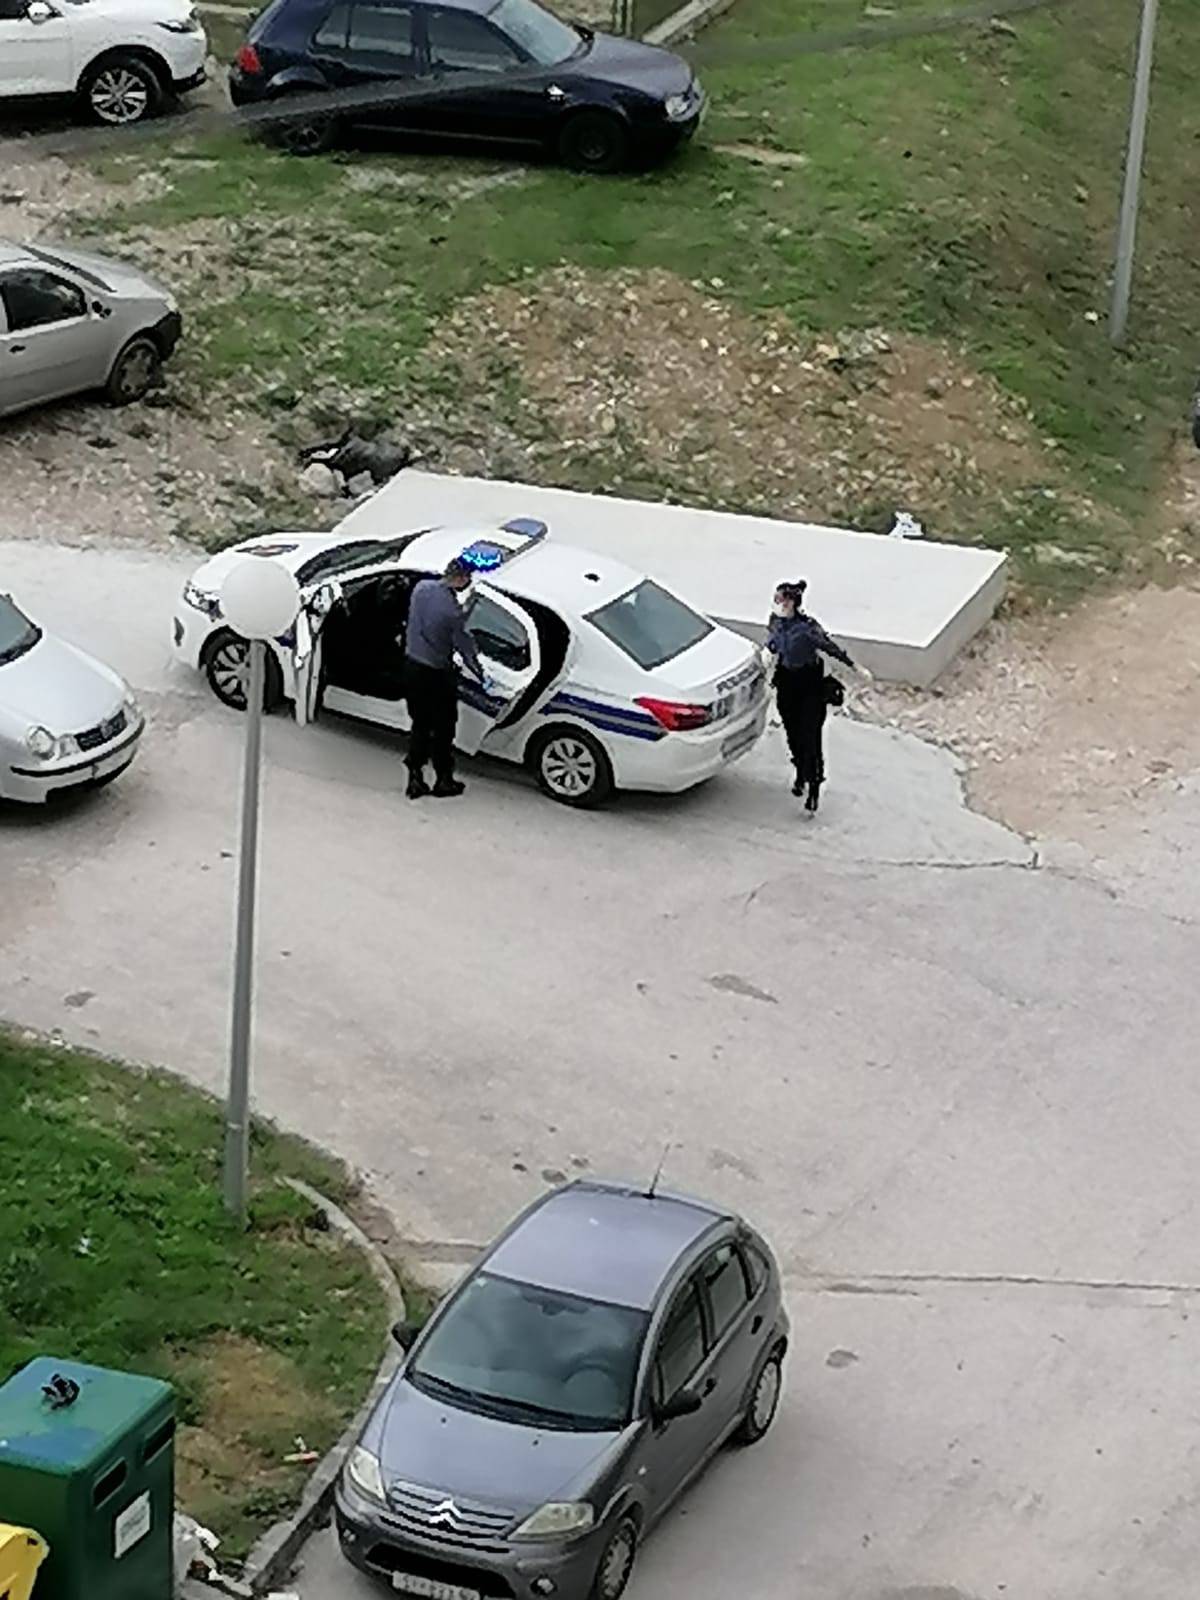 Snimka iz Splita: Uništavala mu auto i vikala, stigla je i policija